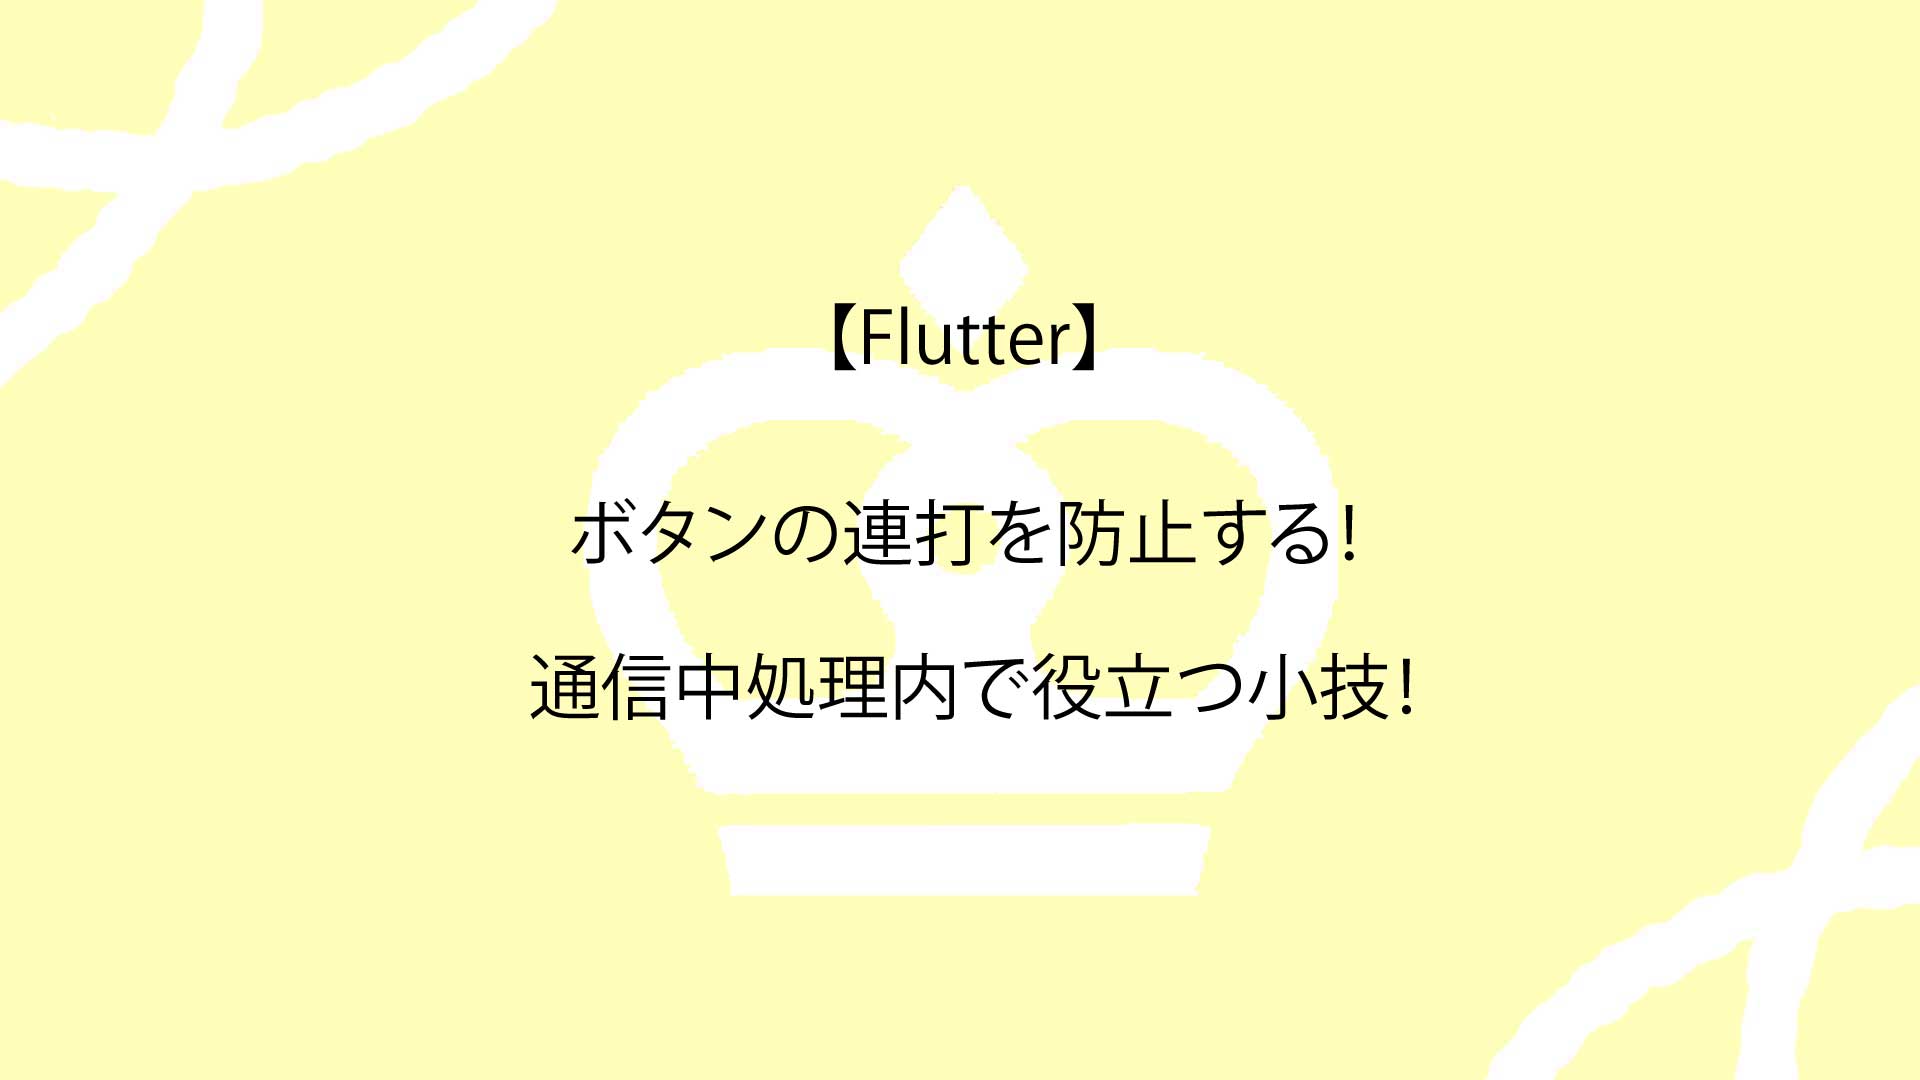 【Flutter】ボタンの連打を防止する！通信中処理内で役立つ小技！